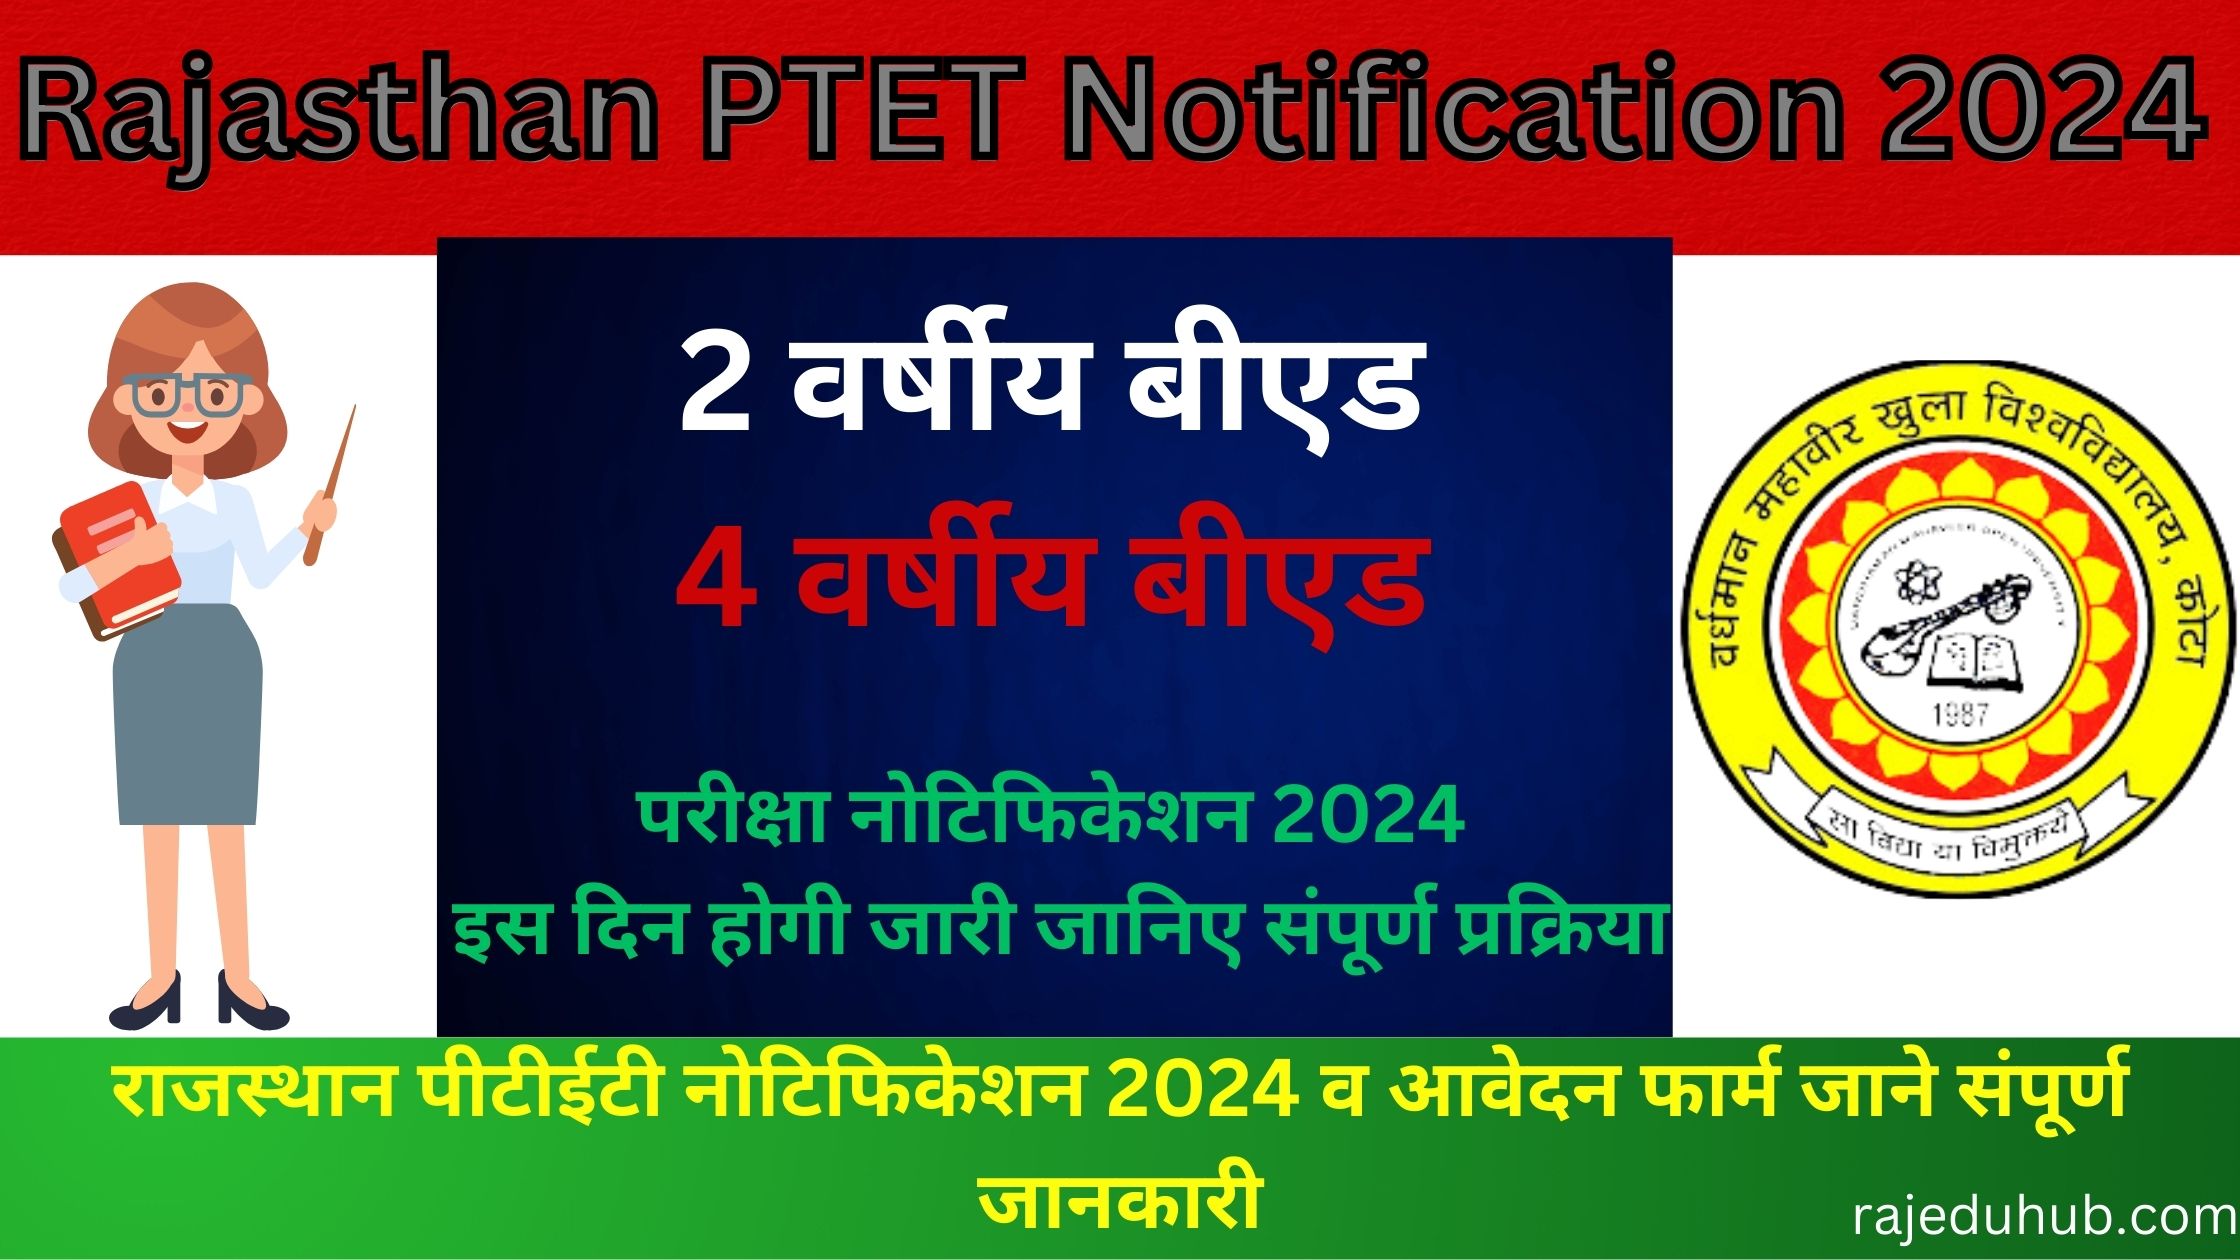 Rajasthan PTET Notification 2024 | राजस्थान पीटीईटी नोटिफिकेशन 2024 व आवेदन फार्म जाने संपूर्ण जानकारी